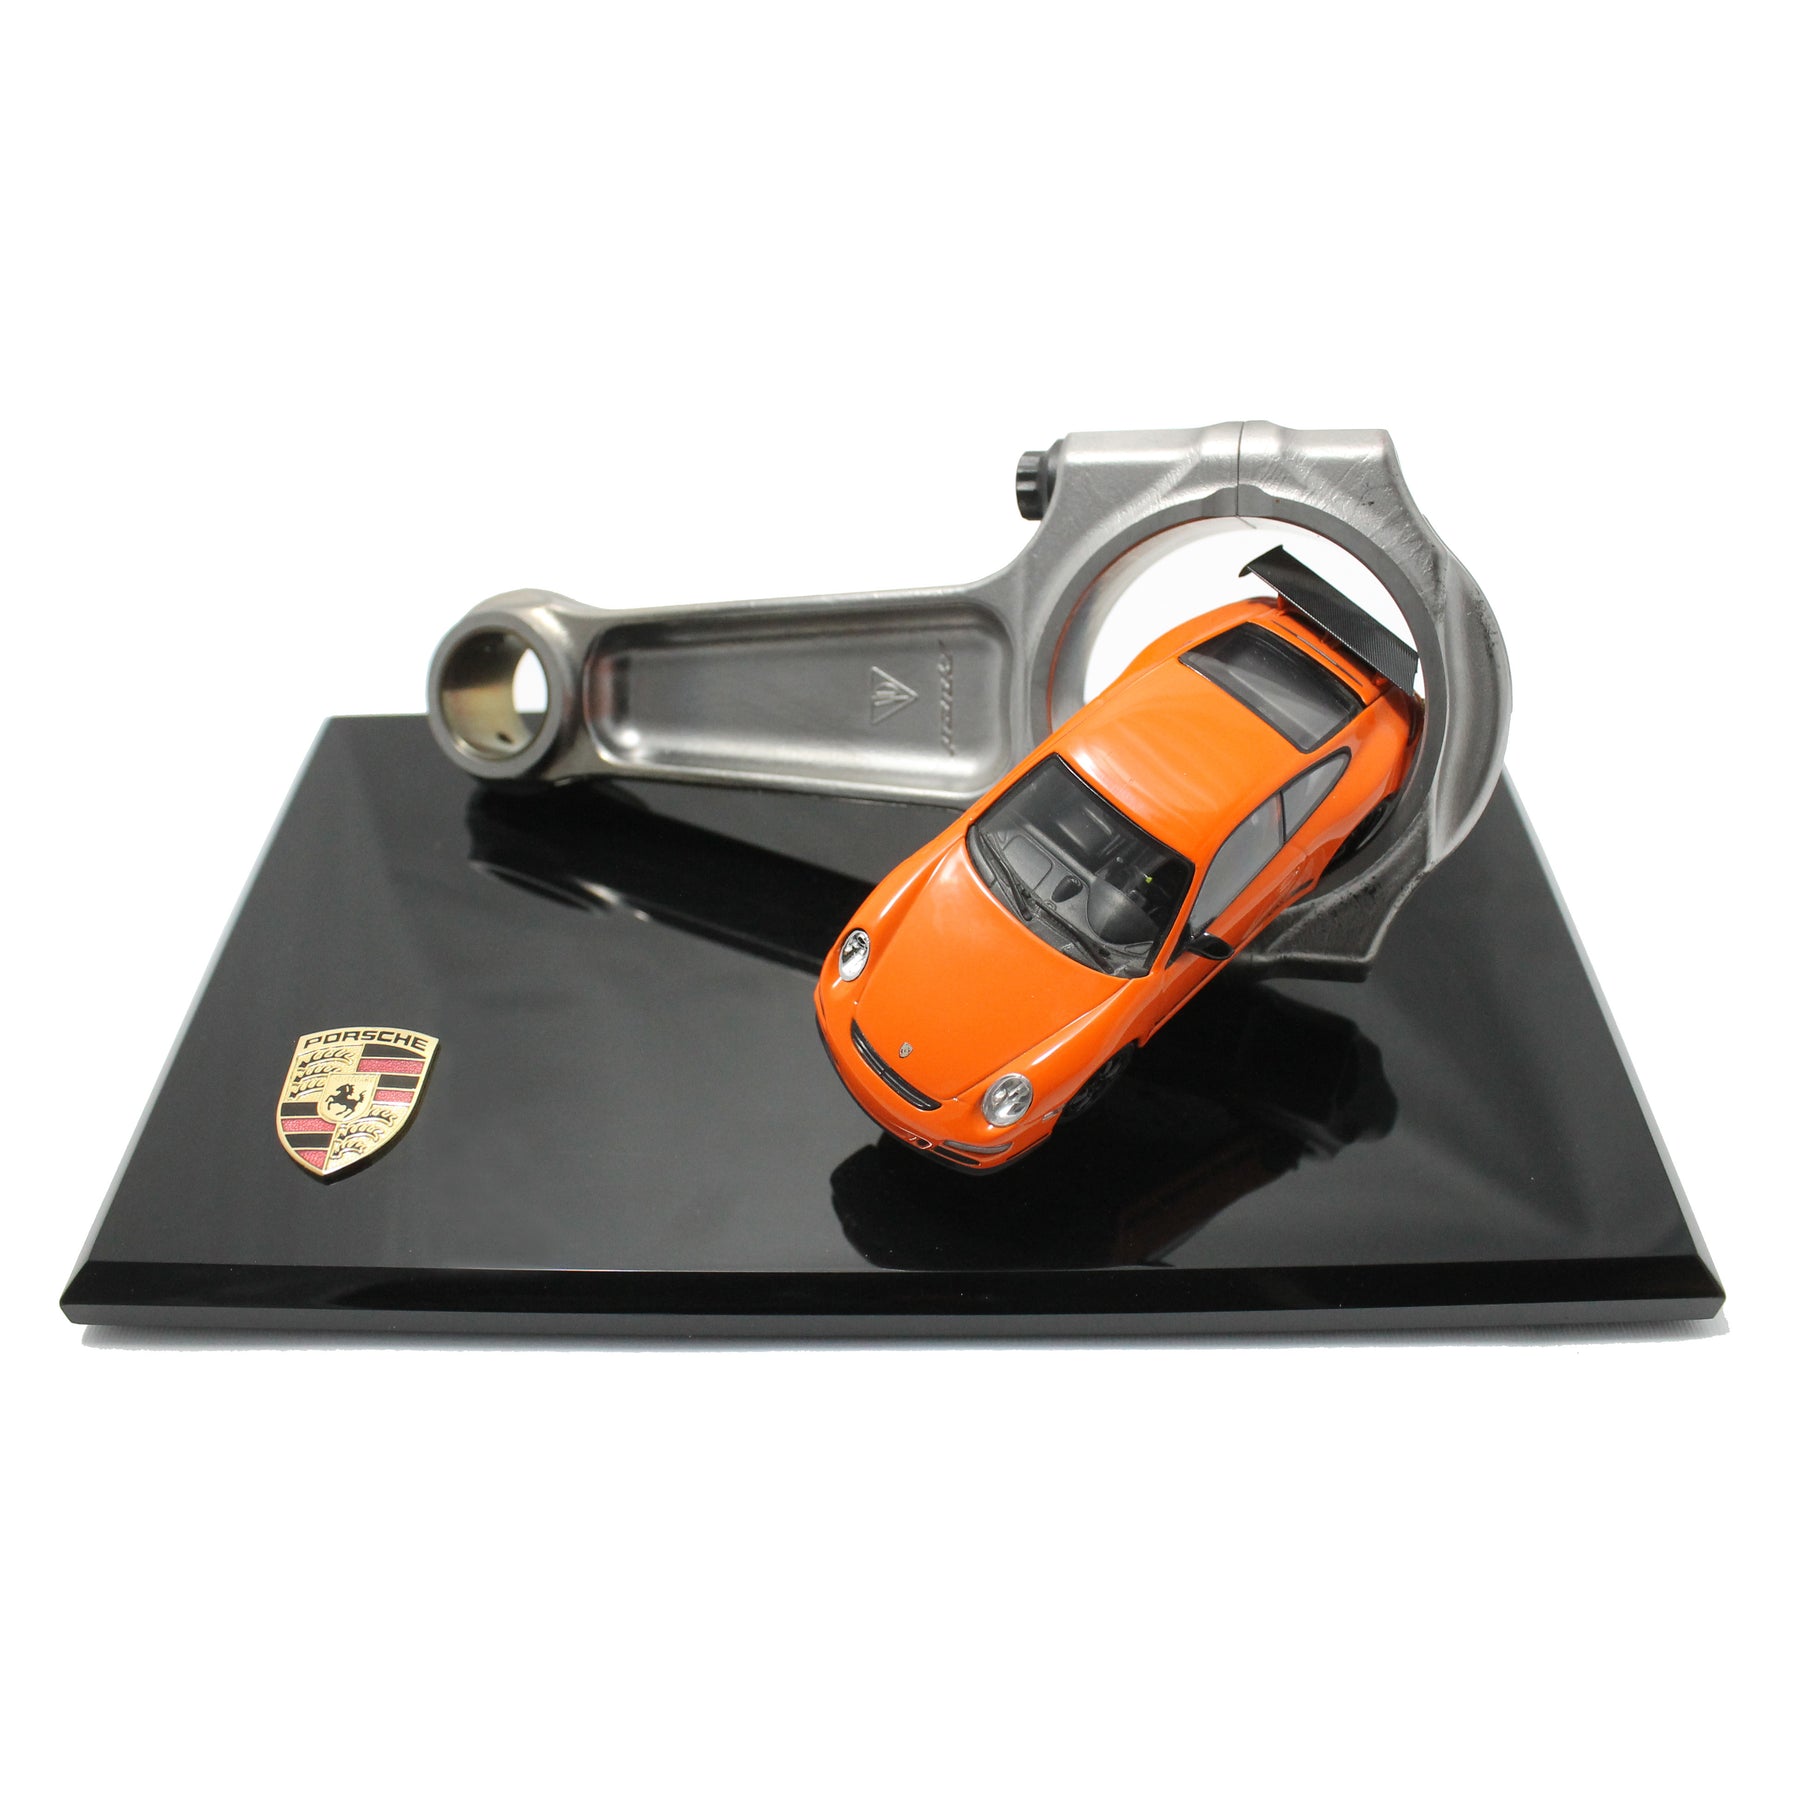 Porsche Desk Model 'Racing Piston'